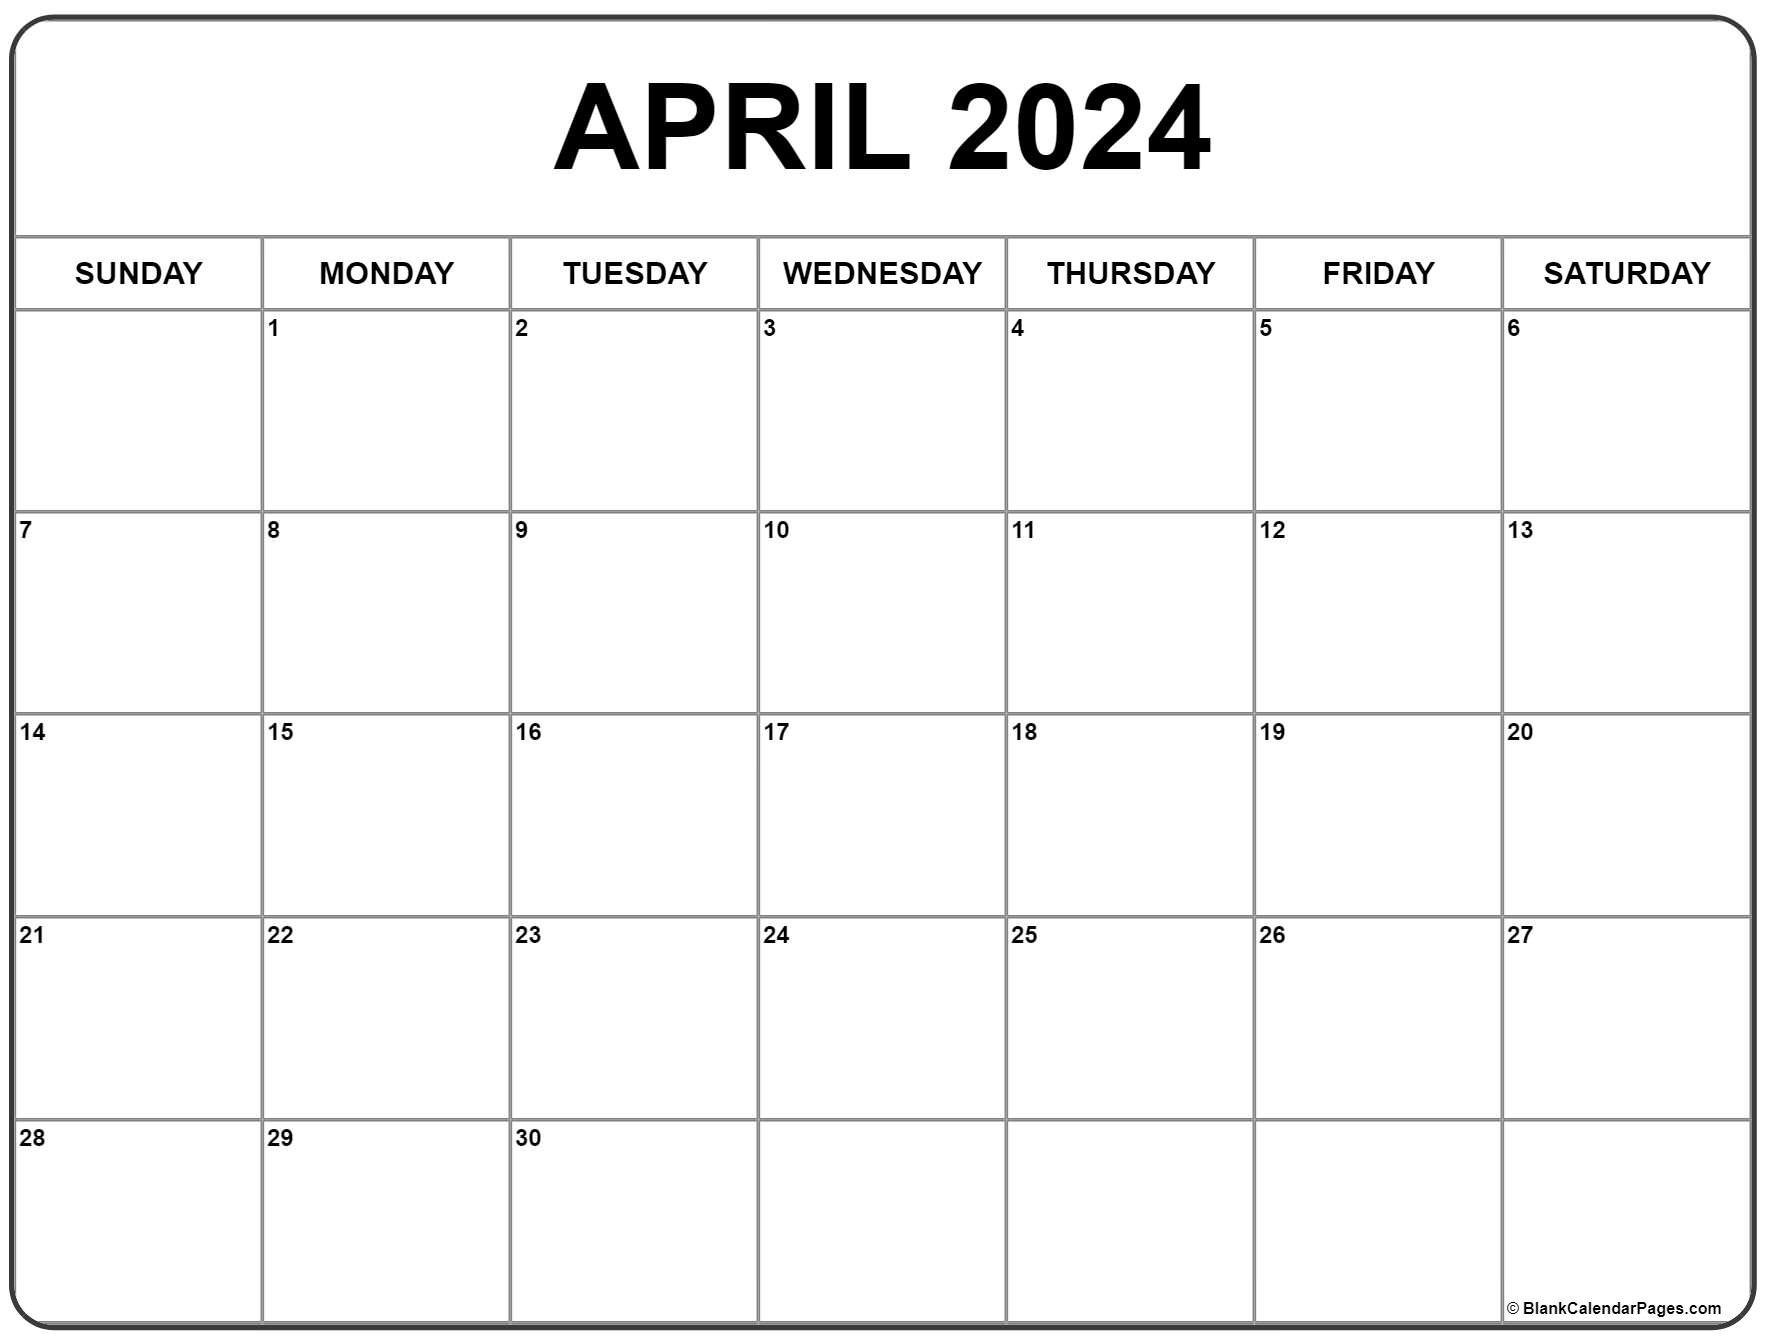 April 2024 Calendar | Free Printable Calendar for April 2024 Calendar Free Printable